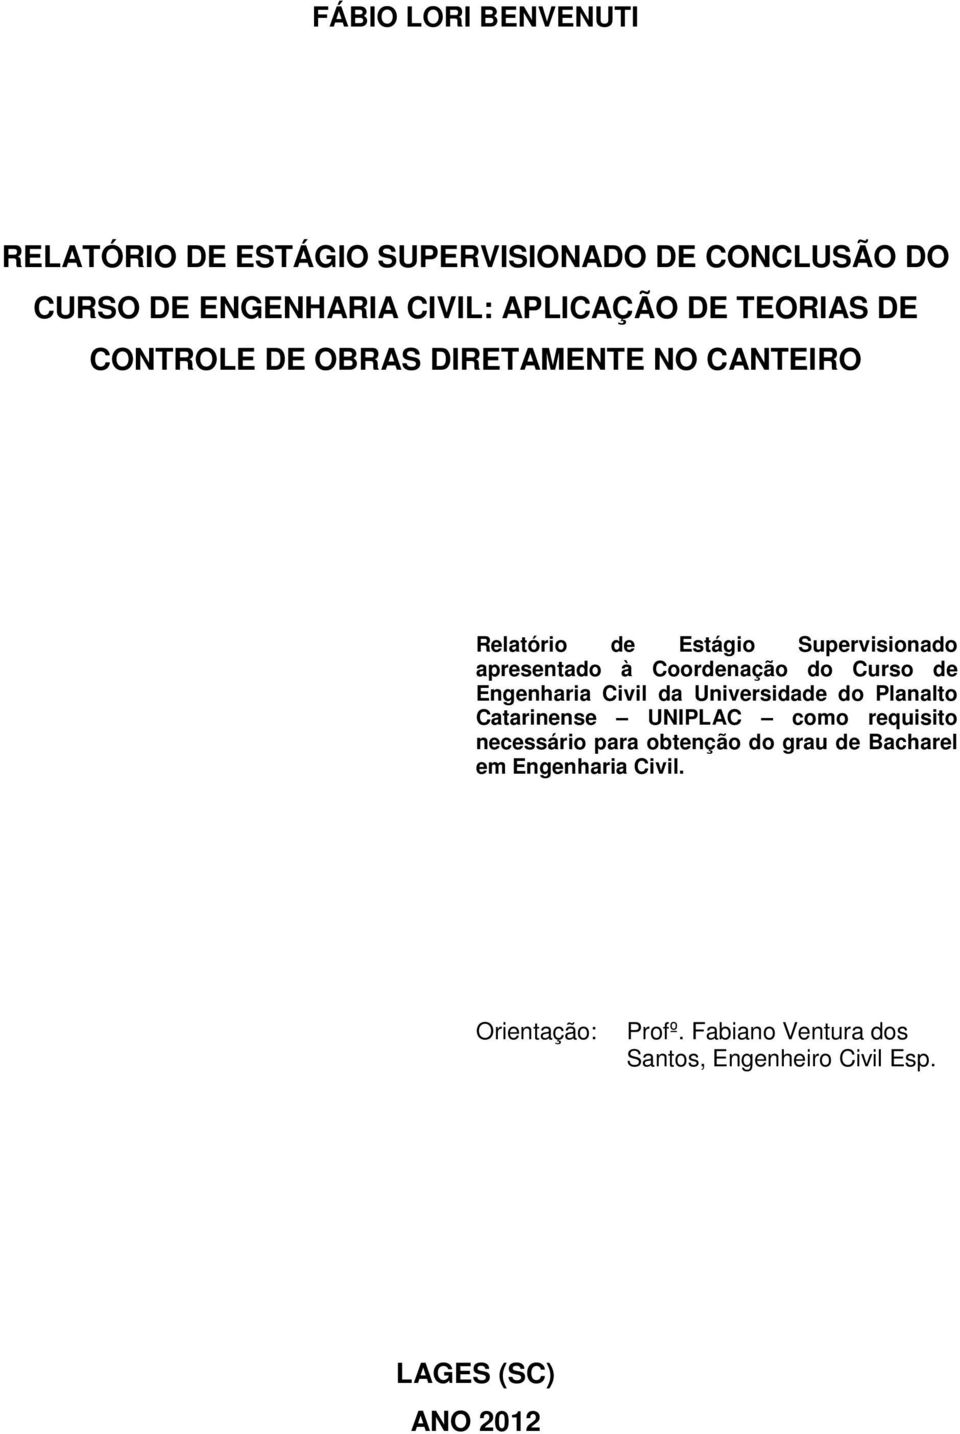 Curso de Engenharia Civil da Universidade do Planalto Catarinense UNIPLAC como requisito necessário para obtenção do